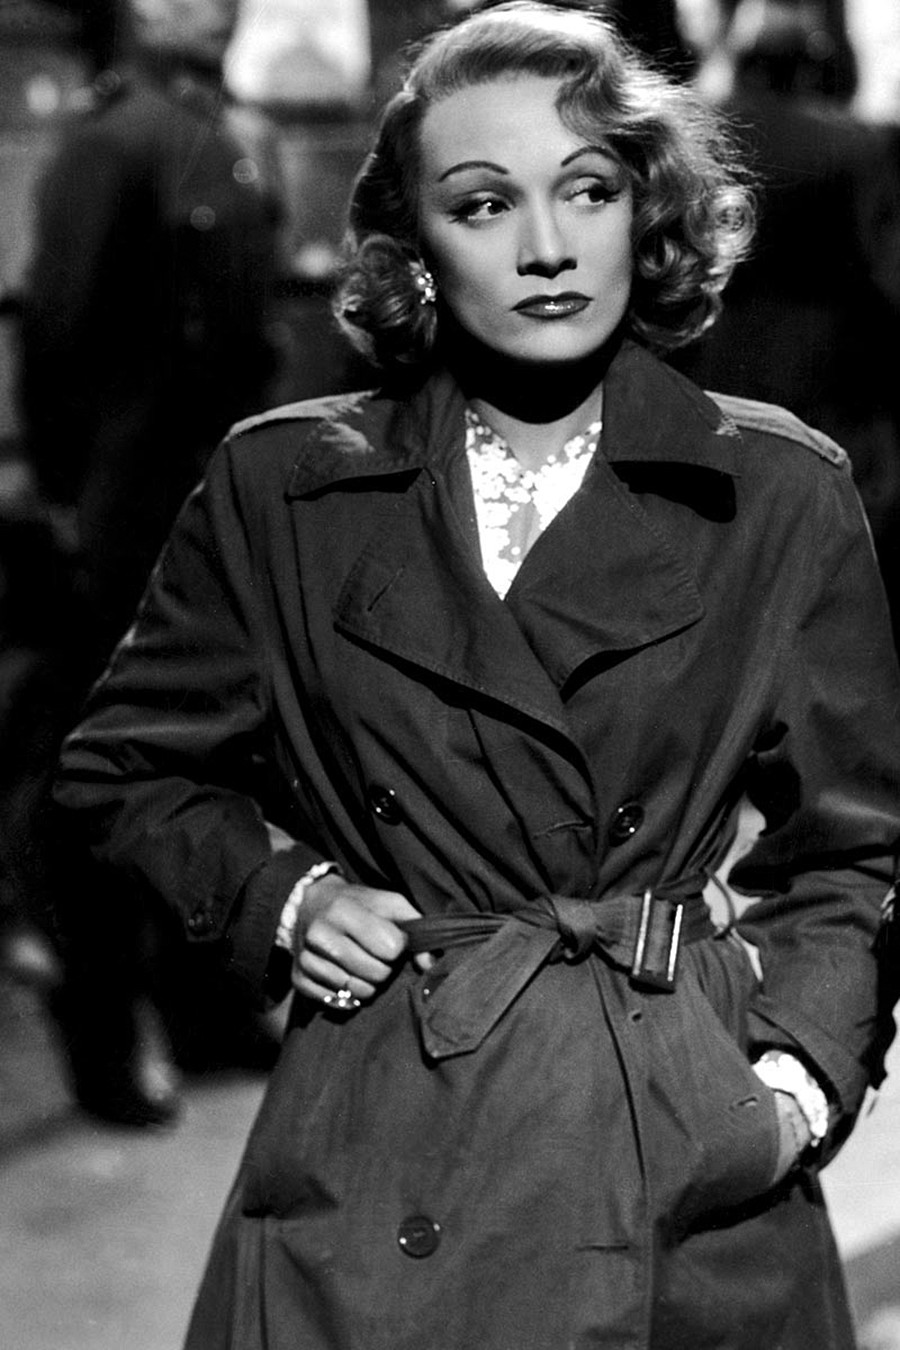 Marlene Dietrich in “Scandalo internazionale”